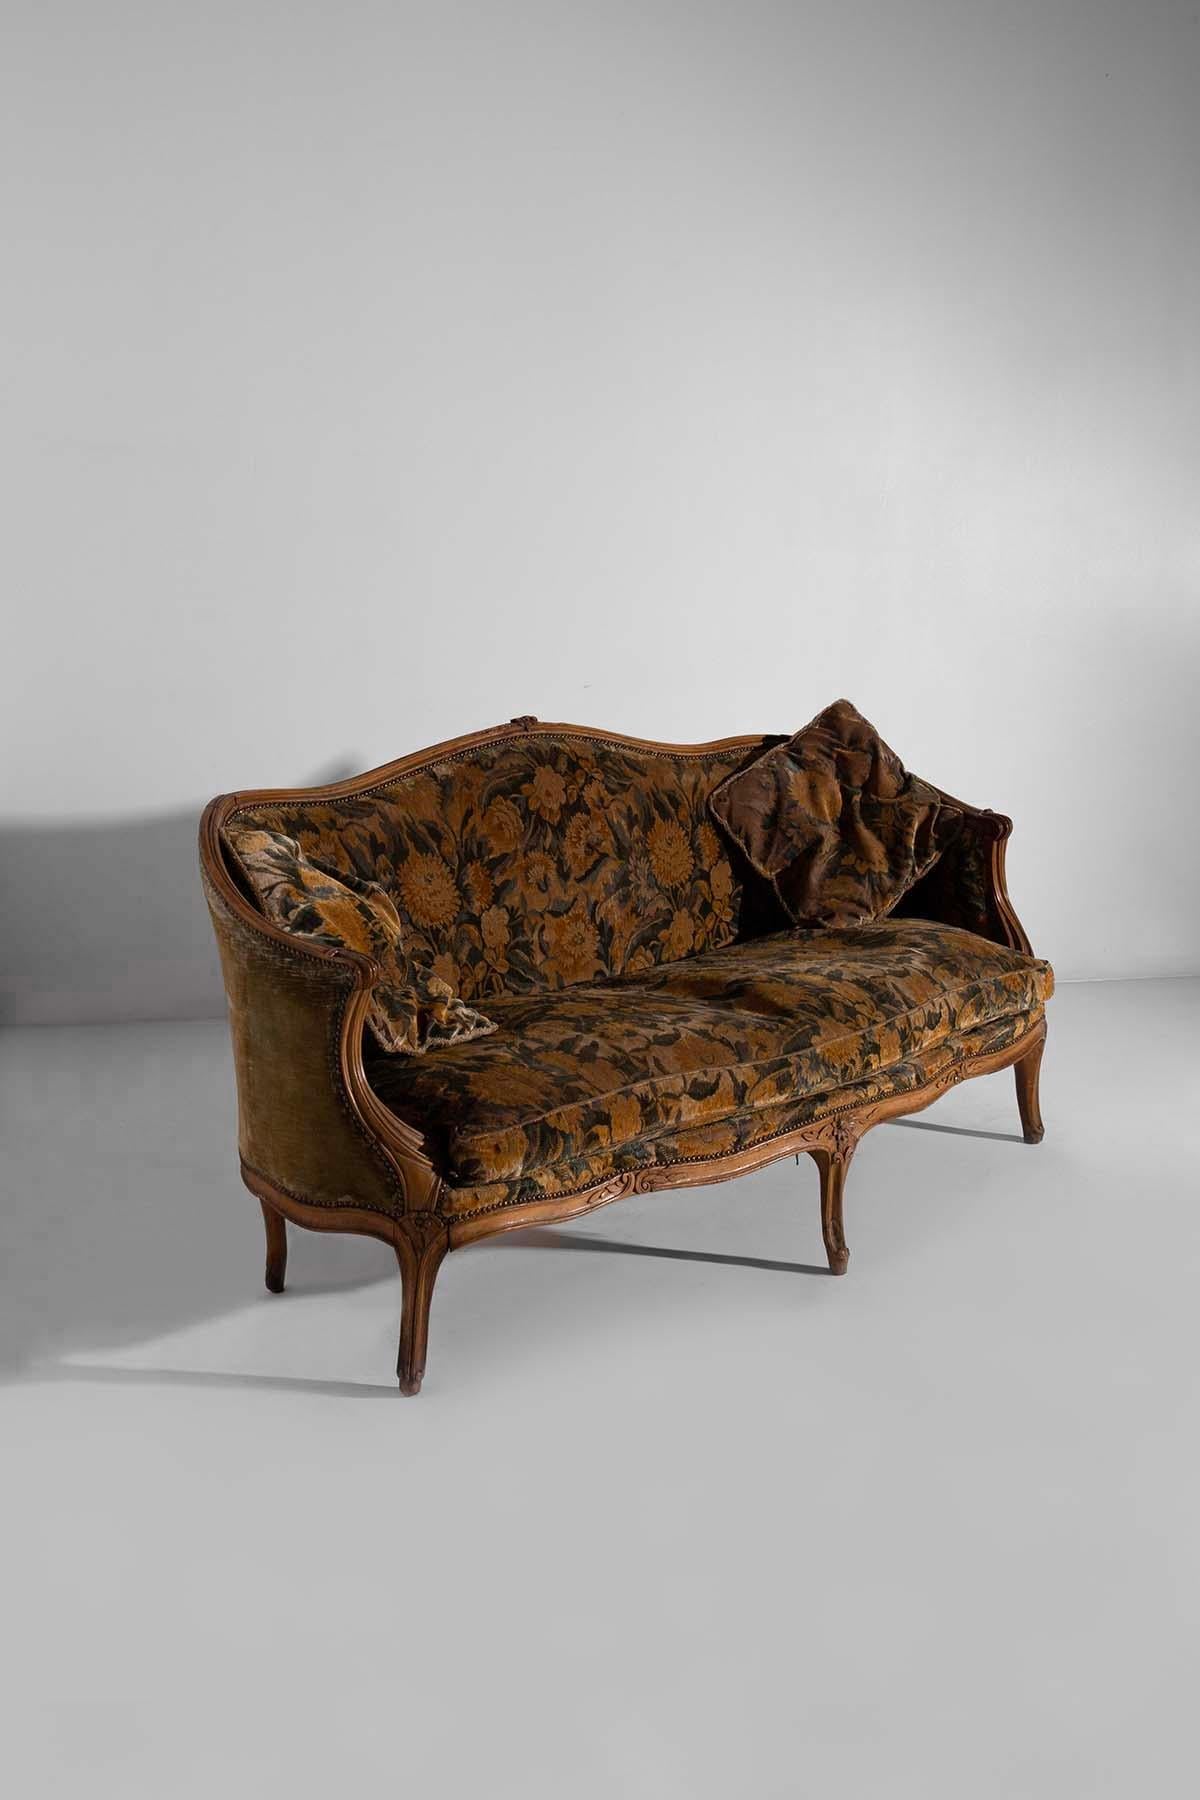 Découvrez le charme de ce canapé du début du XXe siècle au tissu floral italien. Chaque détail de ce canapé, des sculptures en bois méticuleusement réalisées au tissu vintage, reflète l'art et l'artisanat italiens dans ce qu'ils ont de